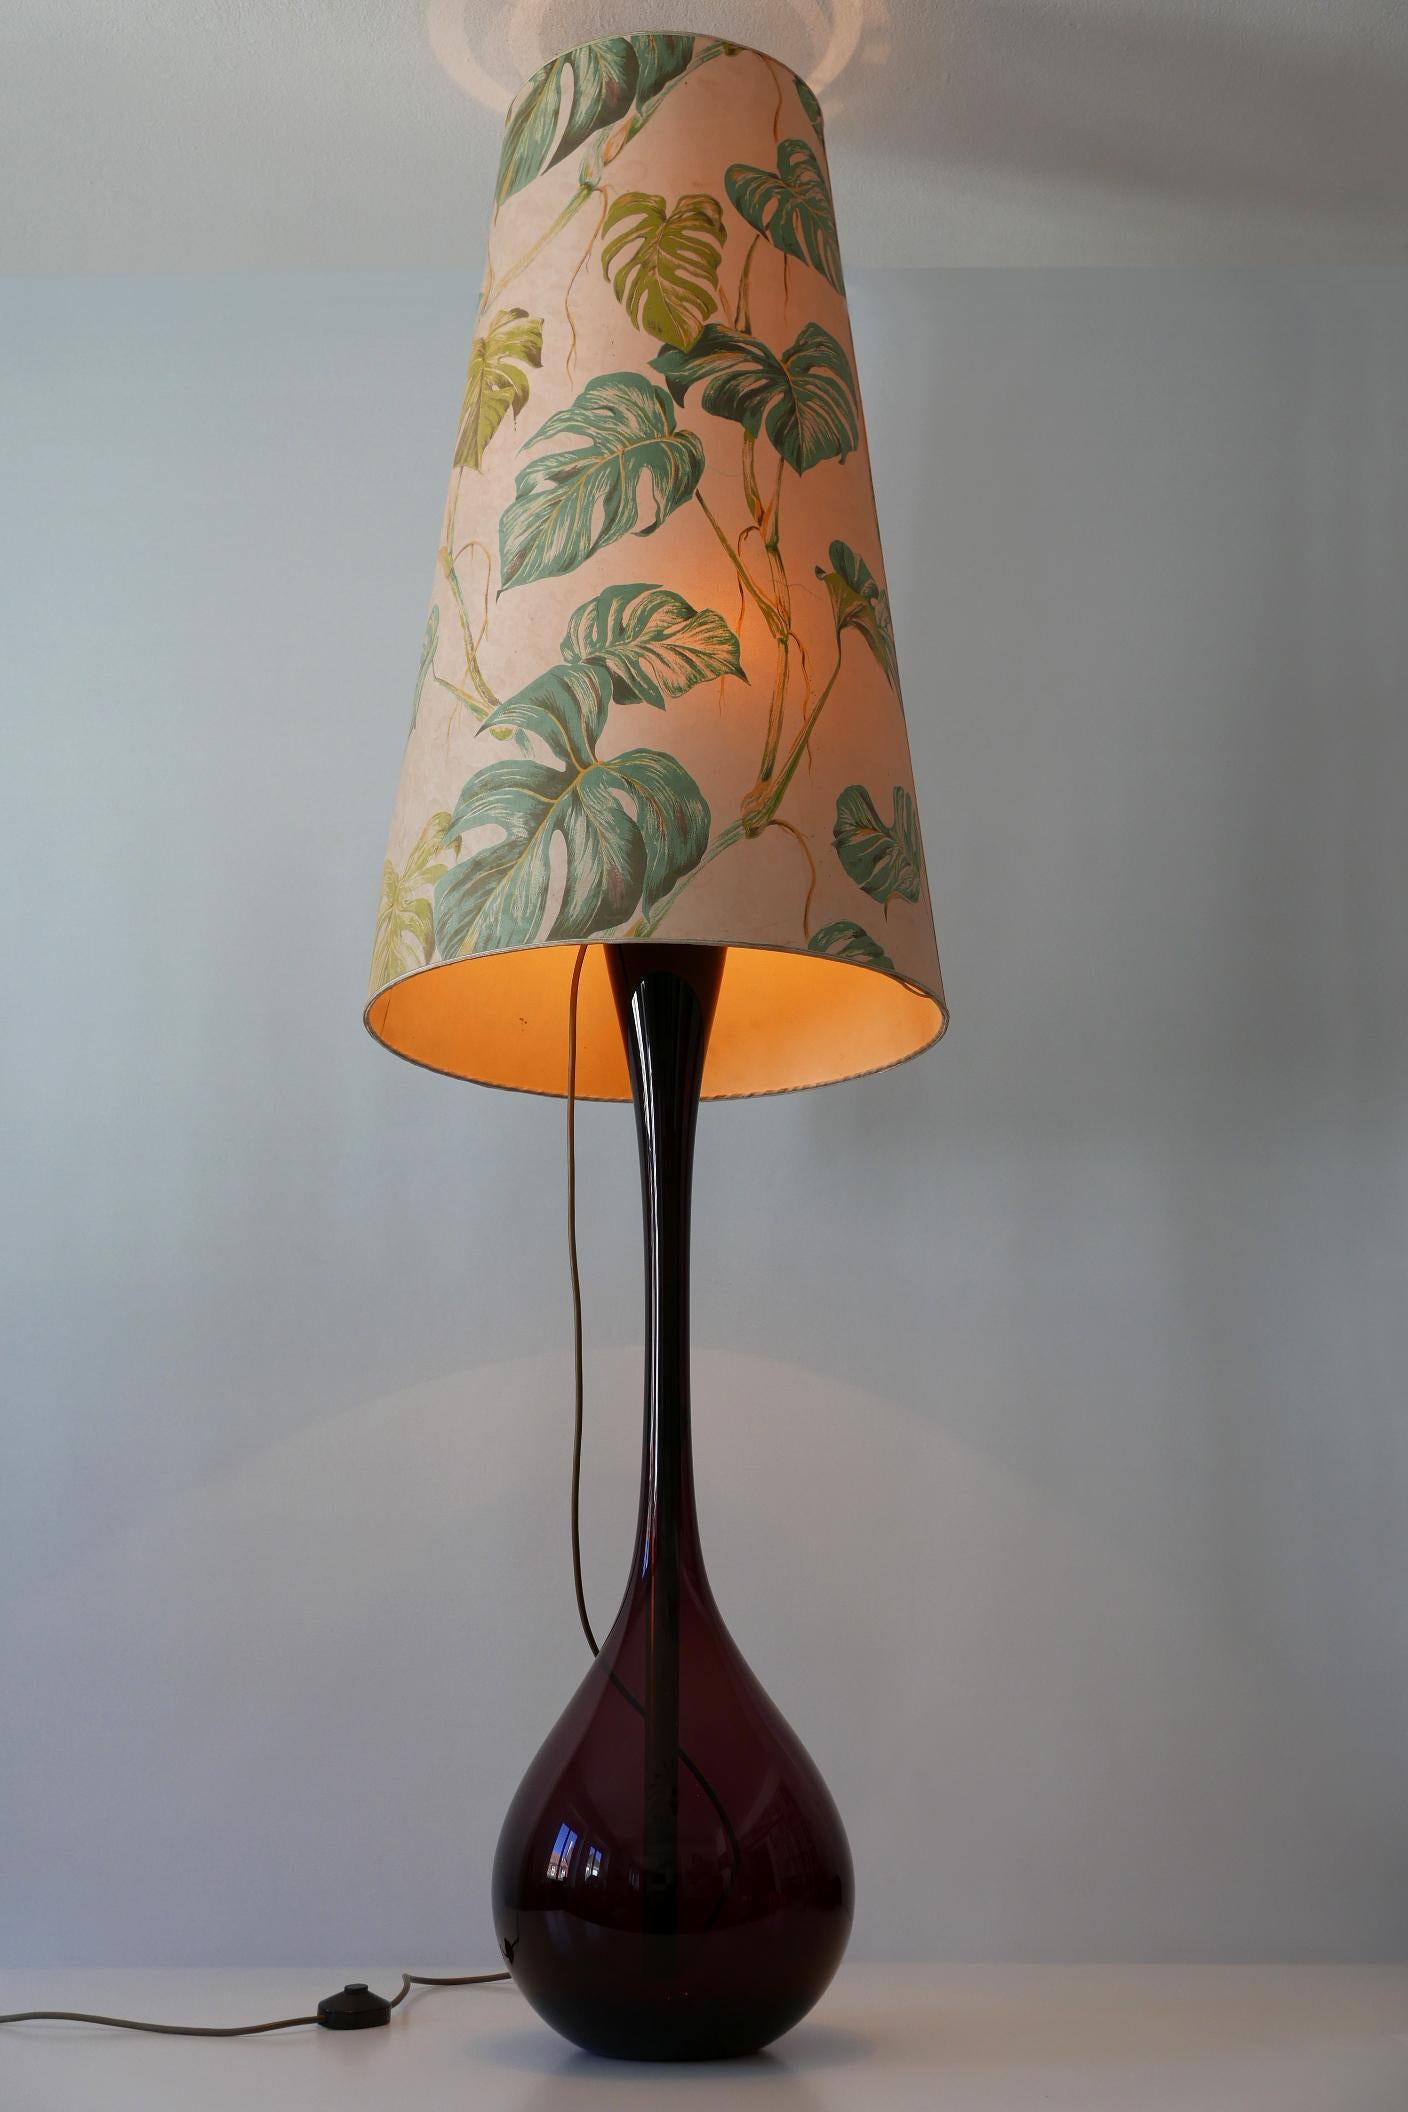 Swedish Large Mid-Century Modern Floor Lamp by Arthur Percy for Gullaskruf 1950s, Sweden For Sale